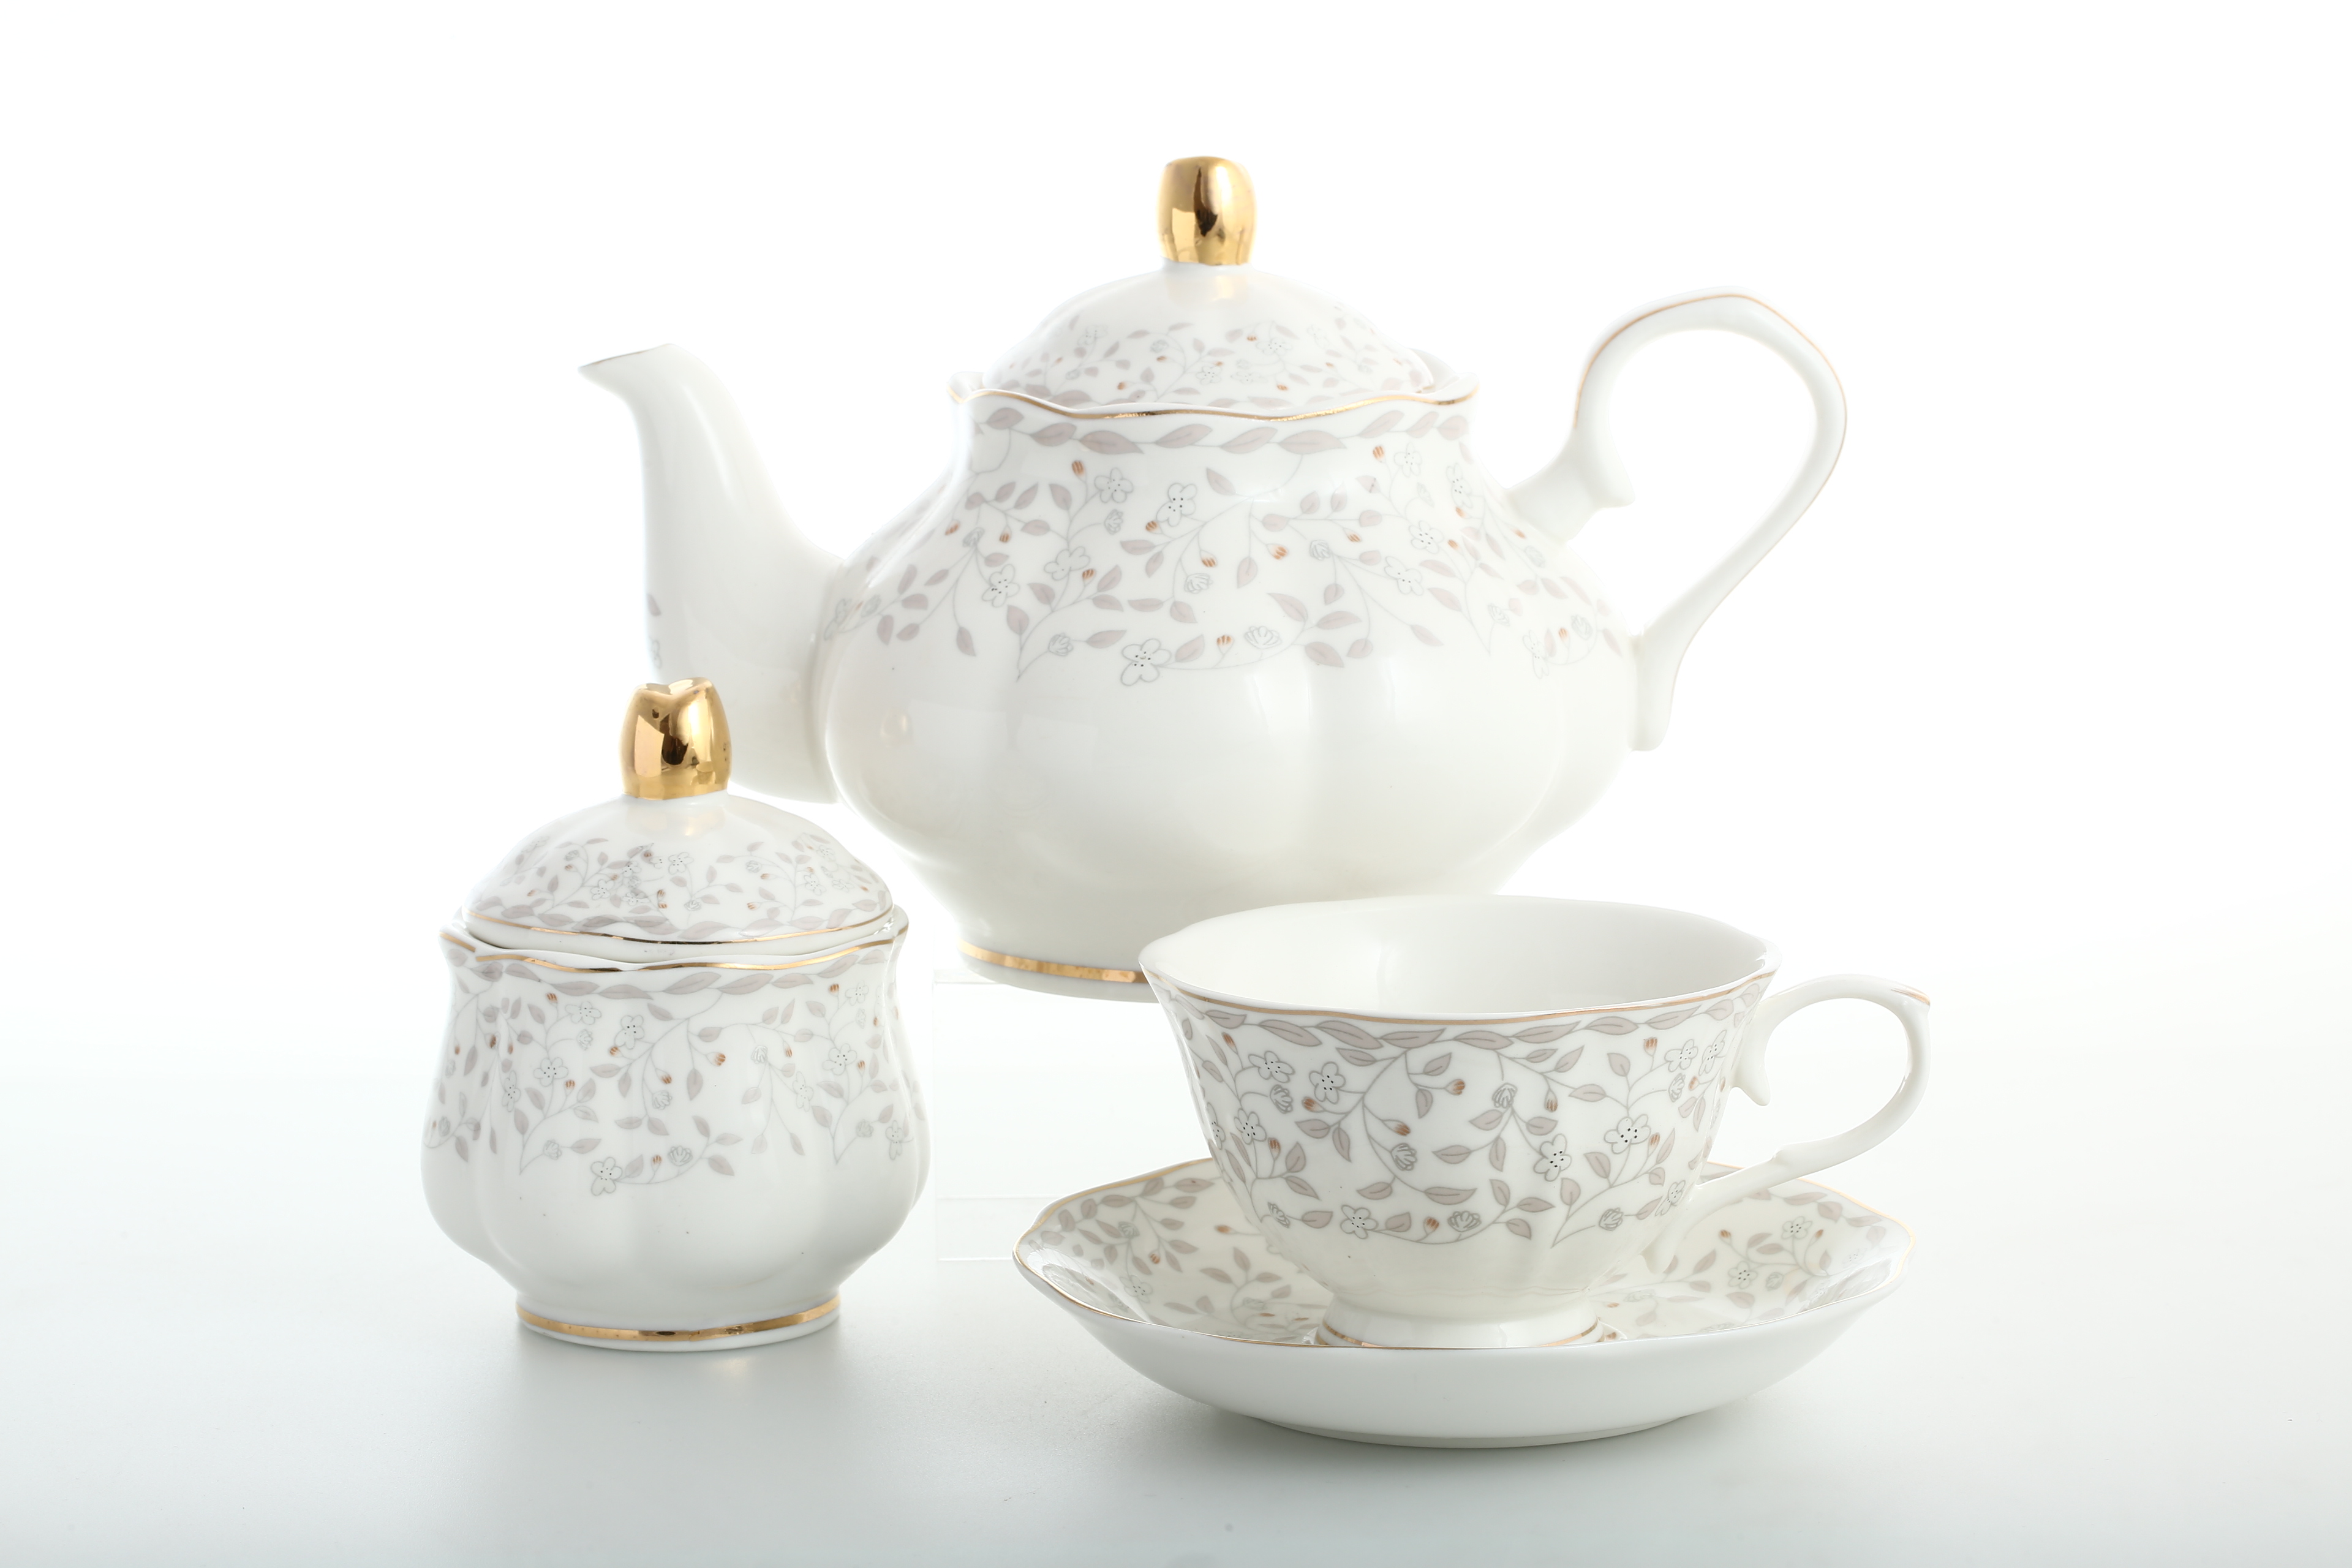 Сервизы royal. Чайный сервиз Вивьен. Чайный сервиз Loraine 25070. Royal Classics England collection чайный сервиз. Сервиз Вивьен Лефард.